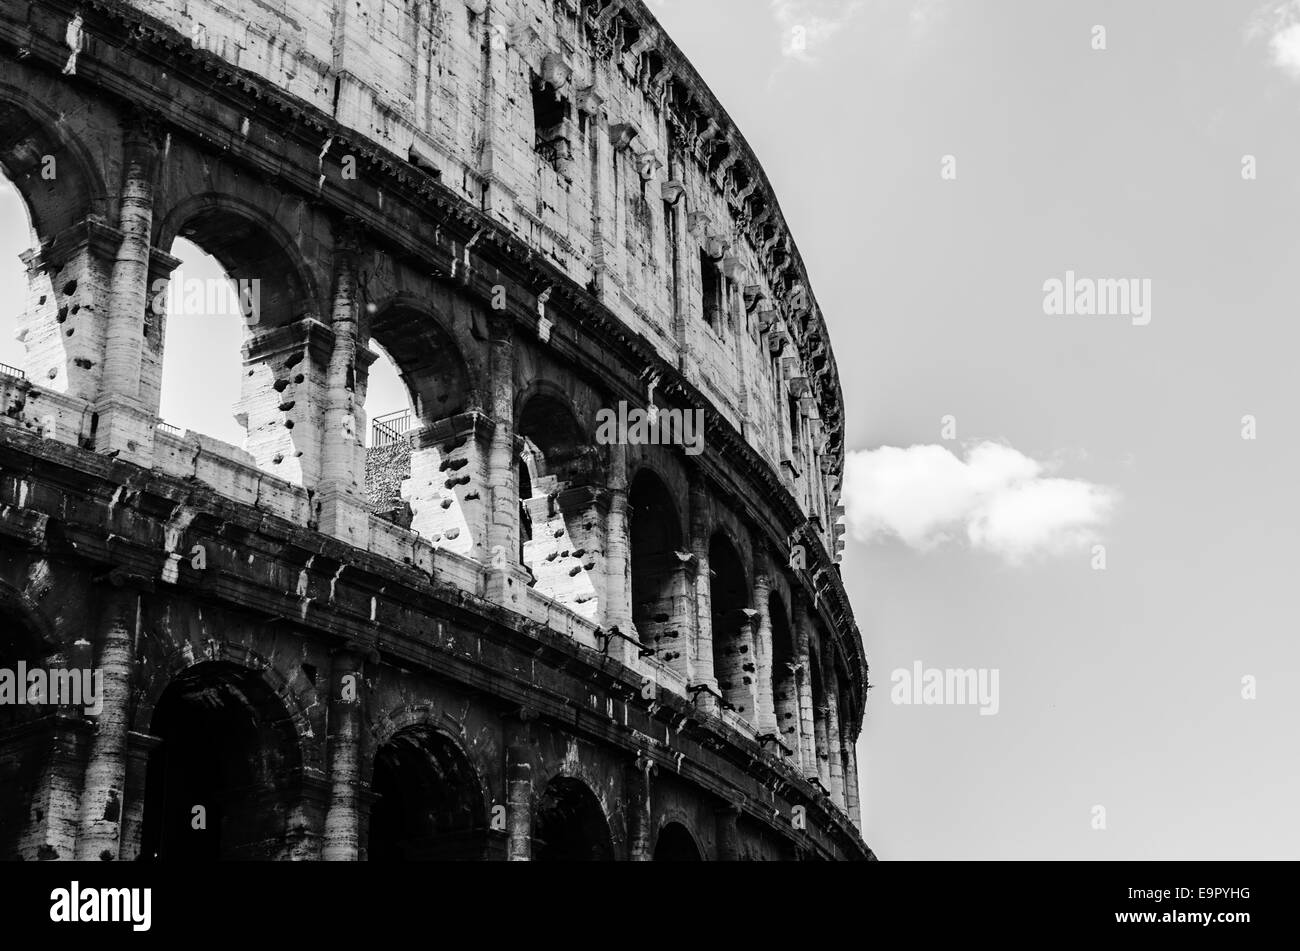 Roma - Il Colosseo o il Colosseo, noto anche come l'Anfiteatro flaviano. Foto Stock